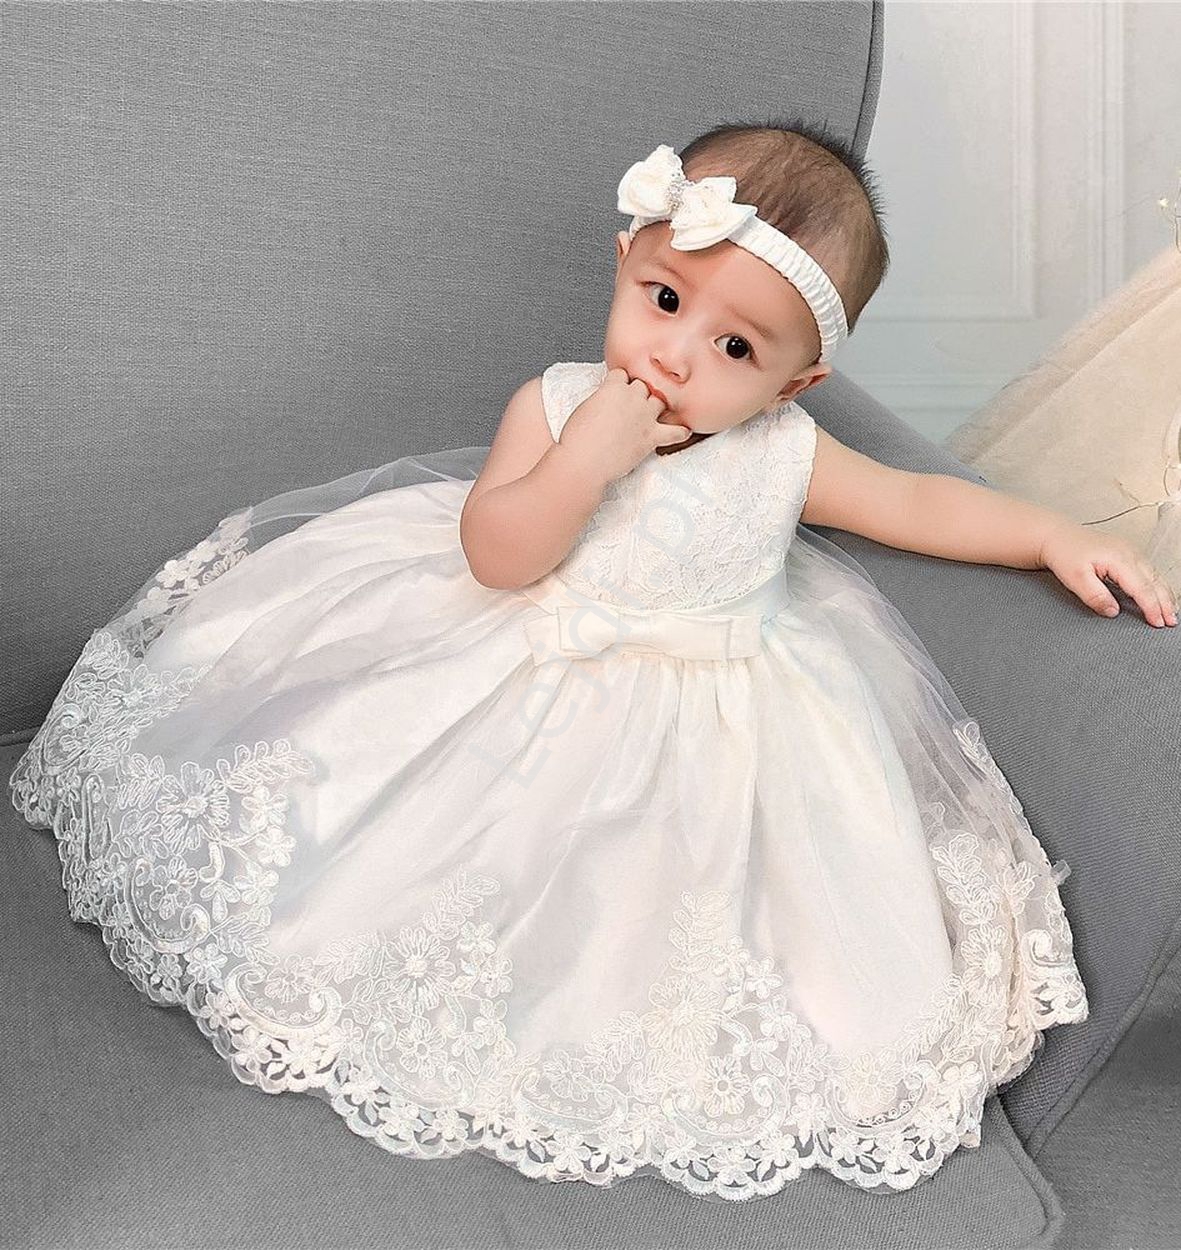  Elegancka dziecięca sukienka na chrzciny w komplecie z opaską